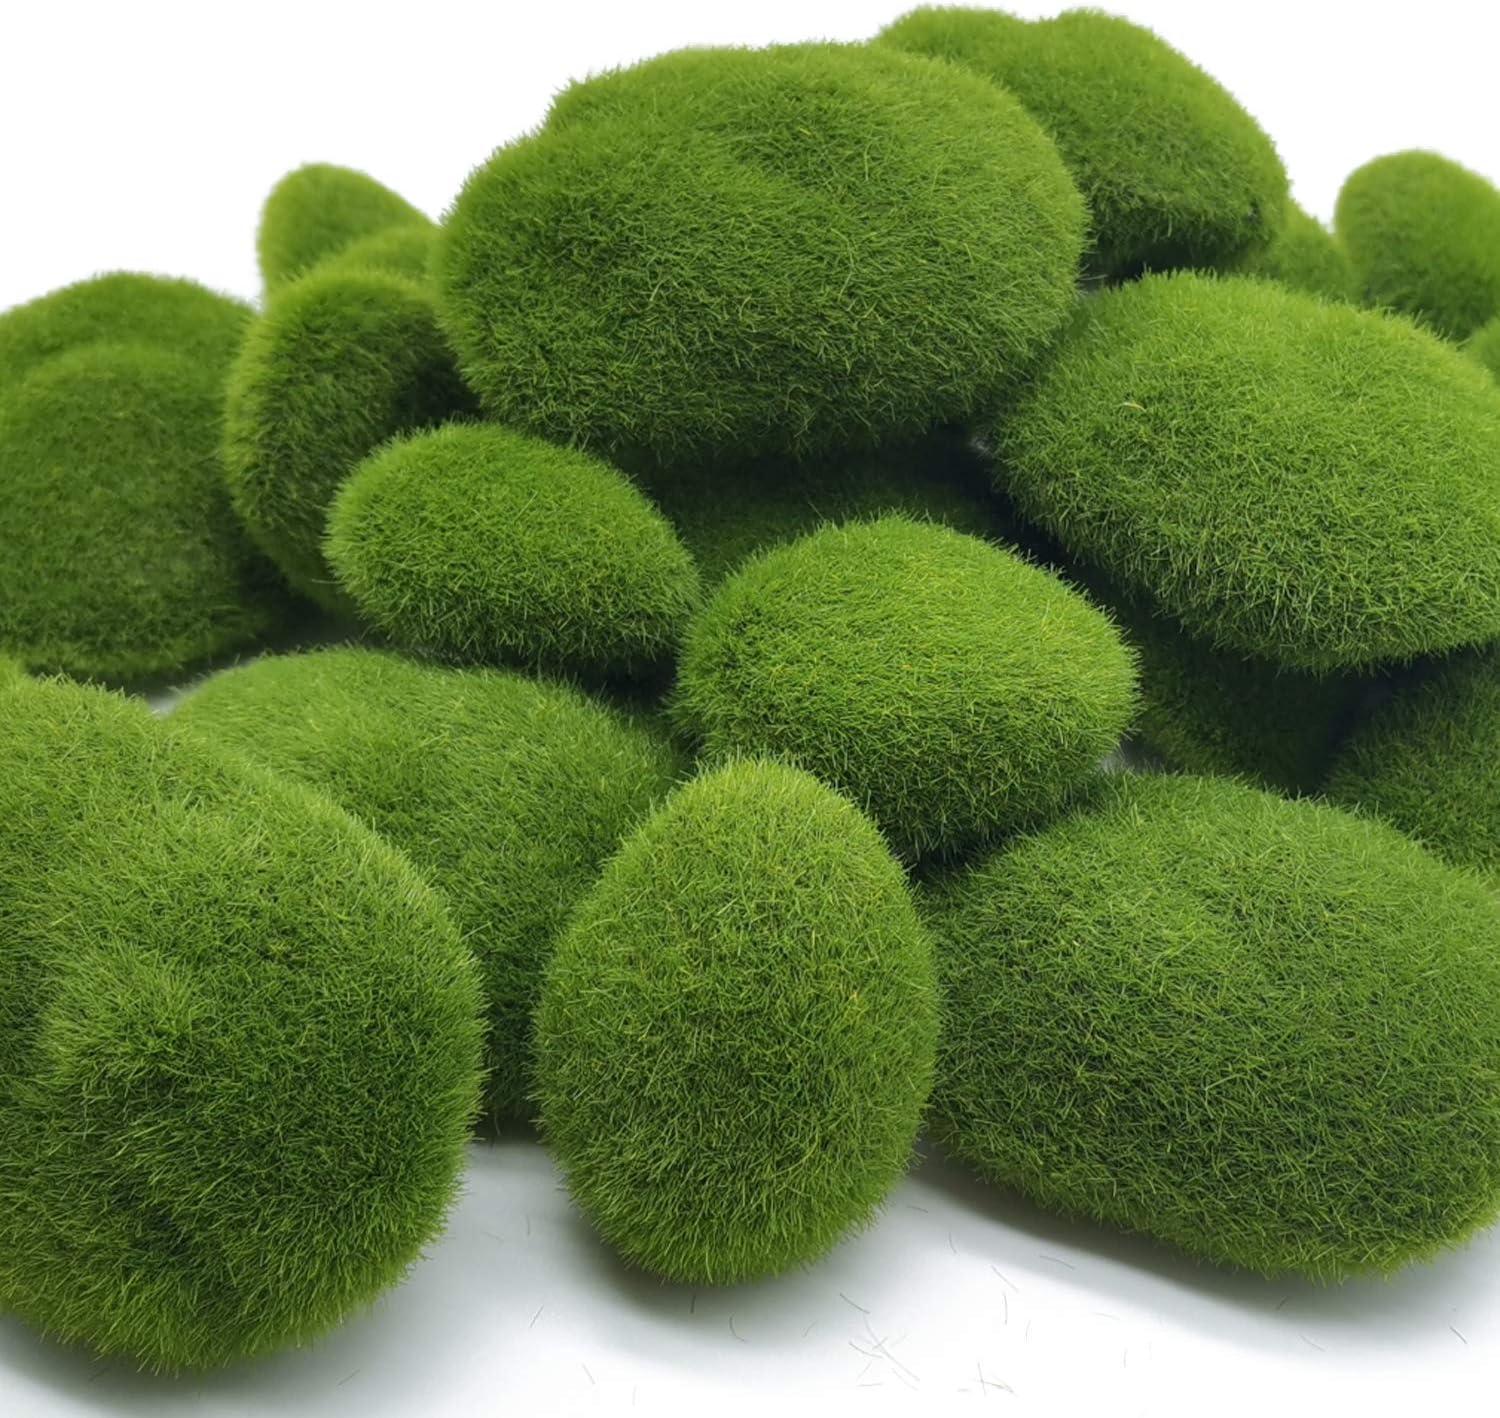 Fyeme 28Pcs Artificial Moss Rocks,Green Moss Balls,Moss Stones